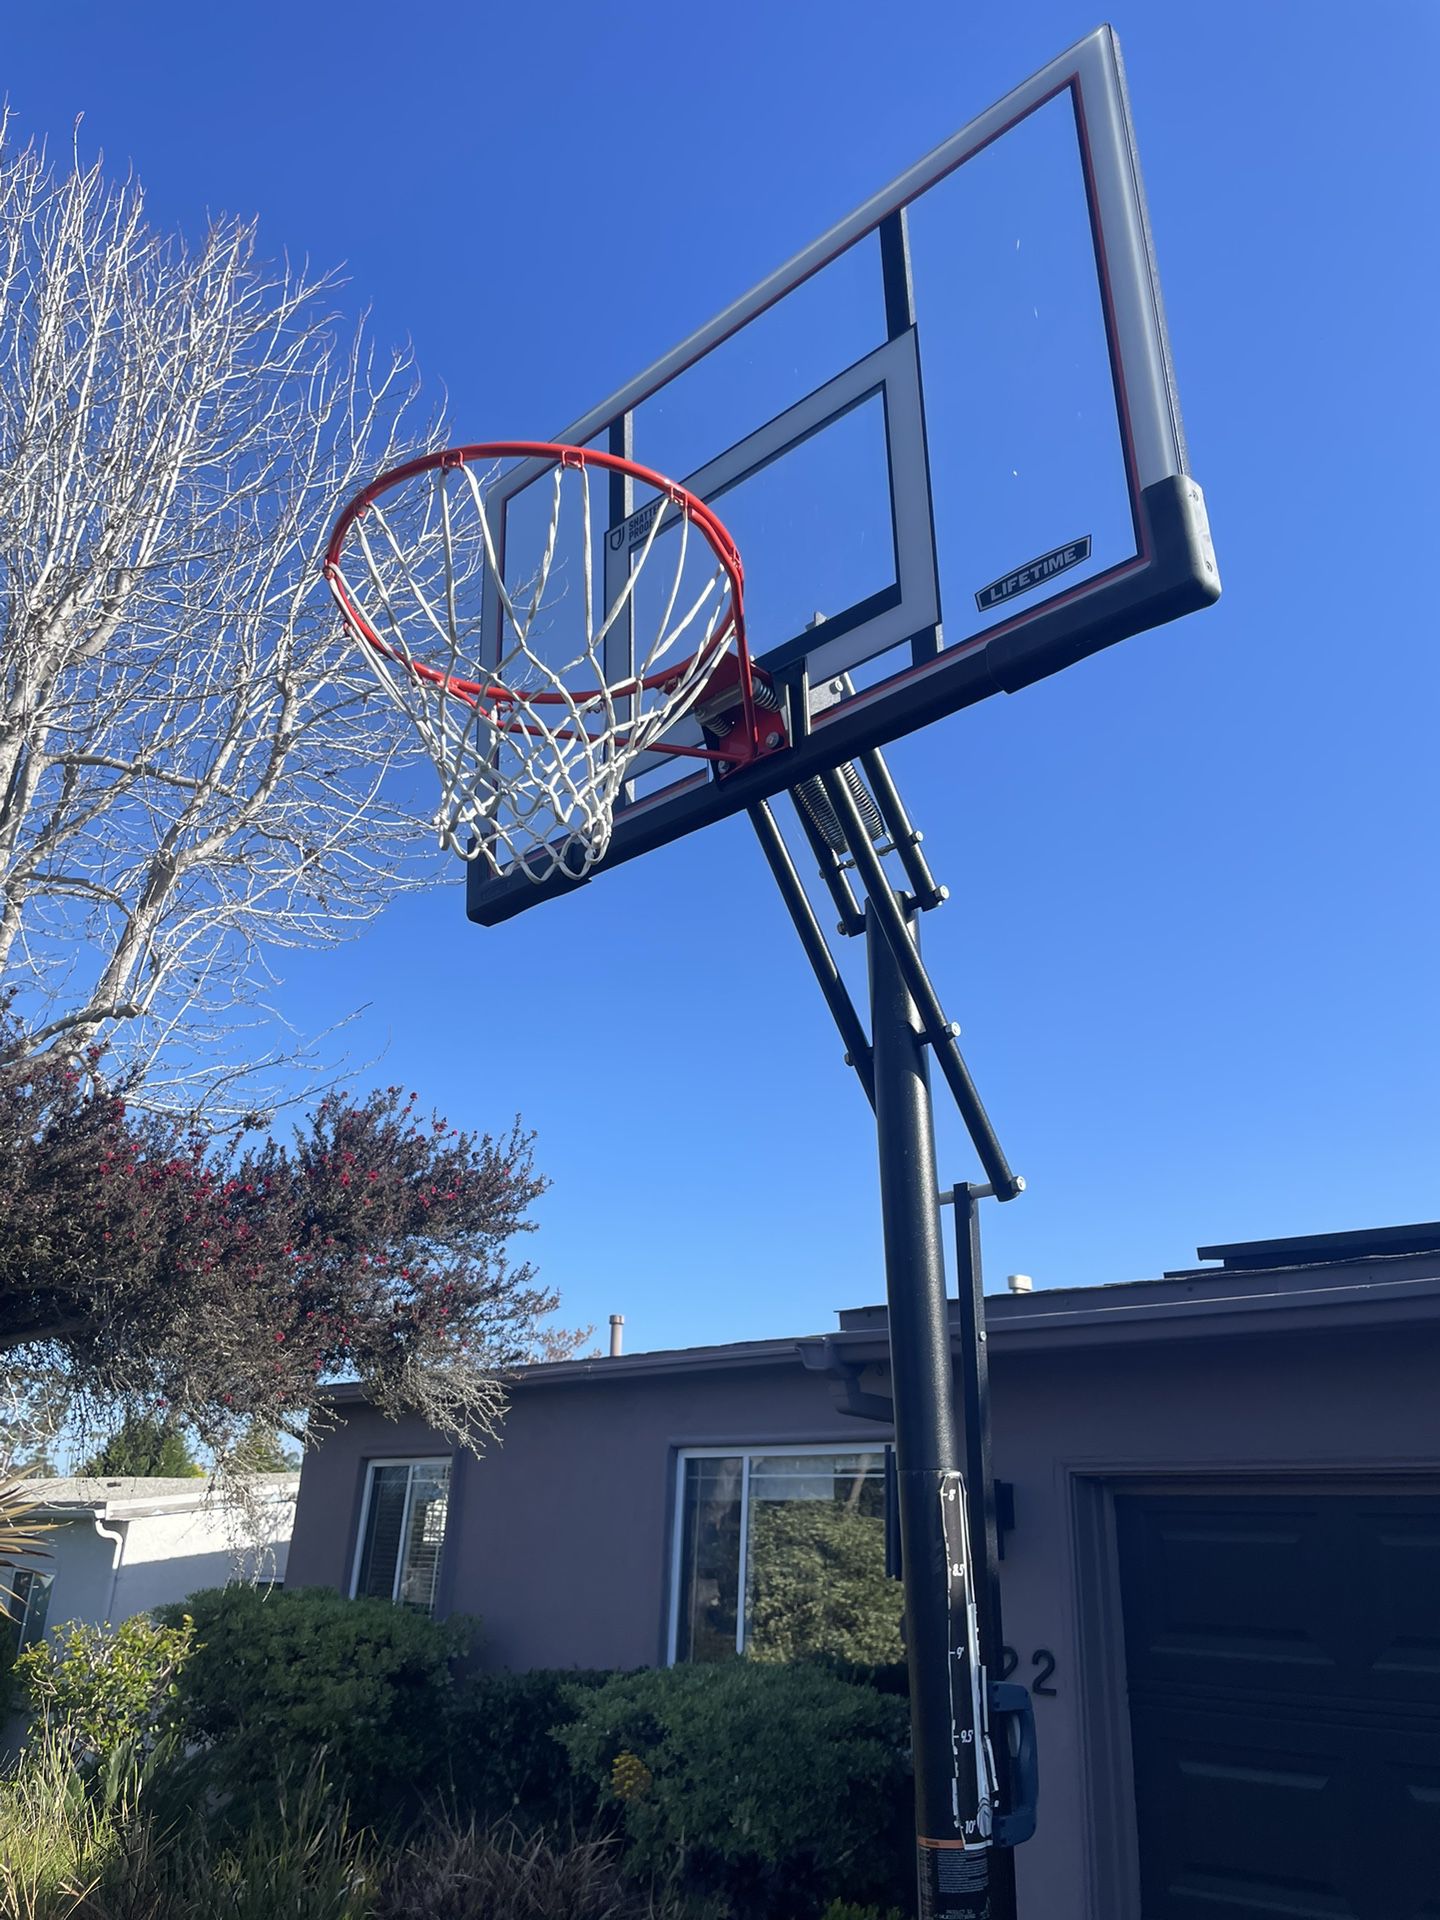 Basketball Hoop, Lifetime 50 Inch